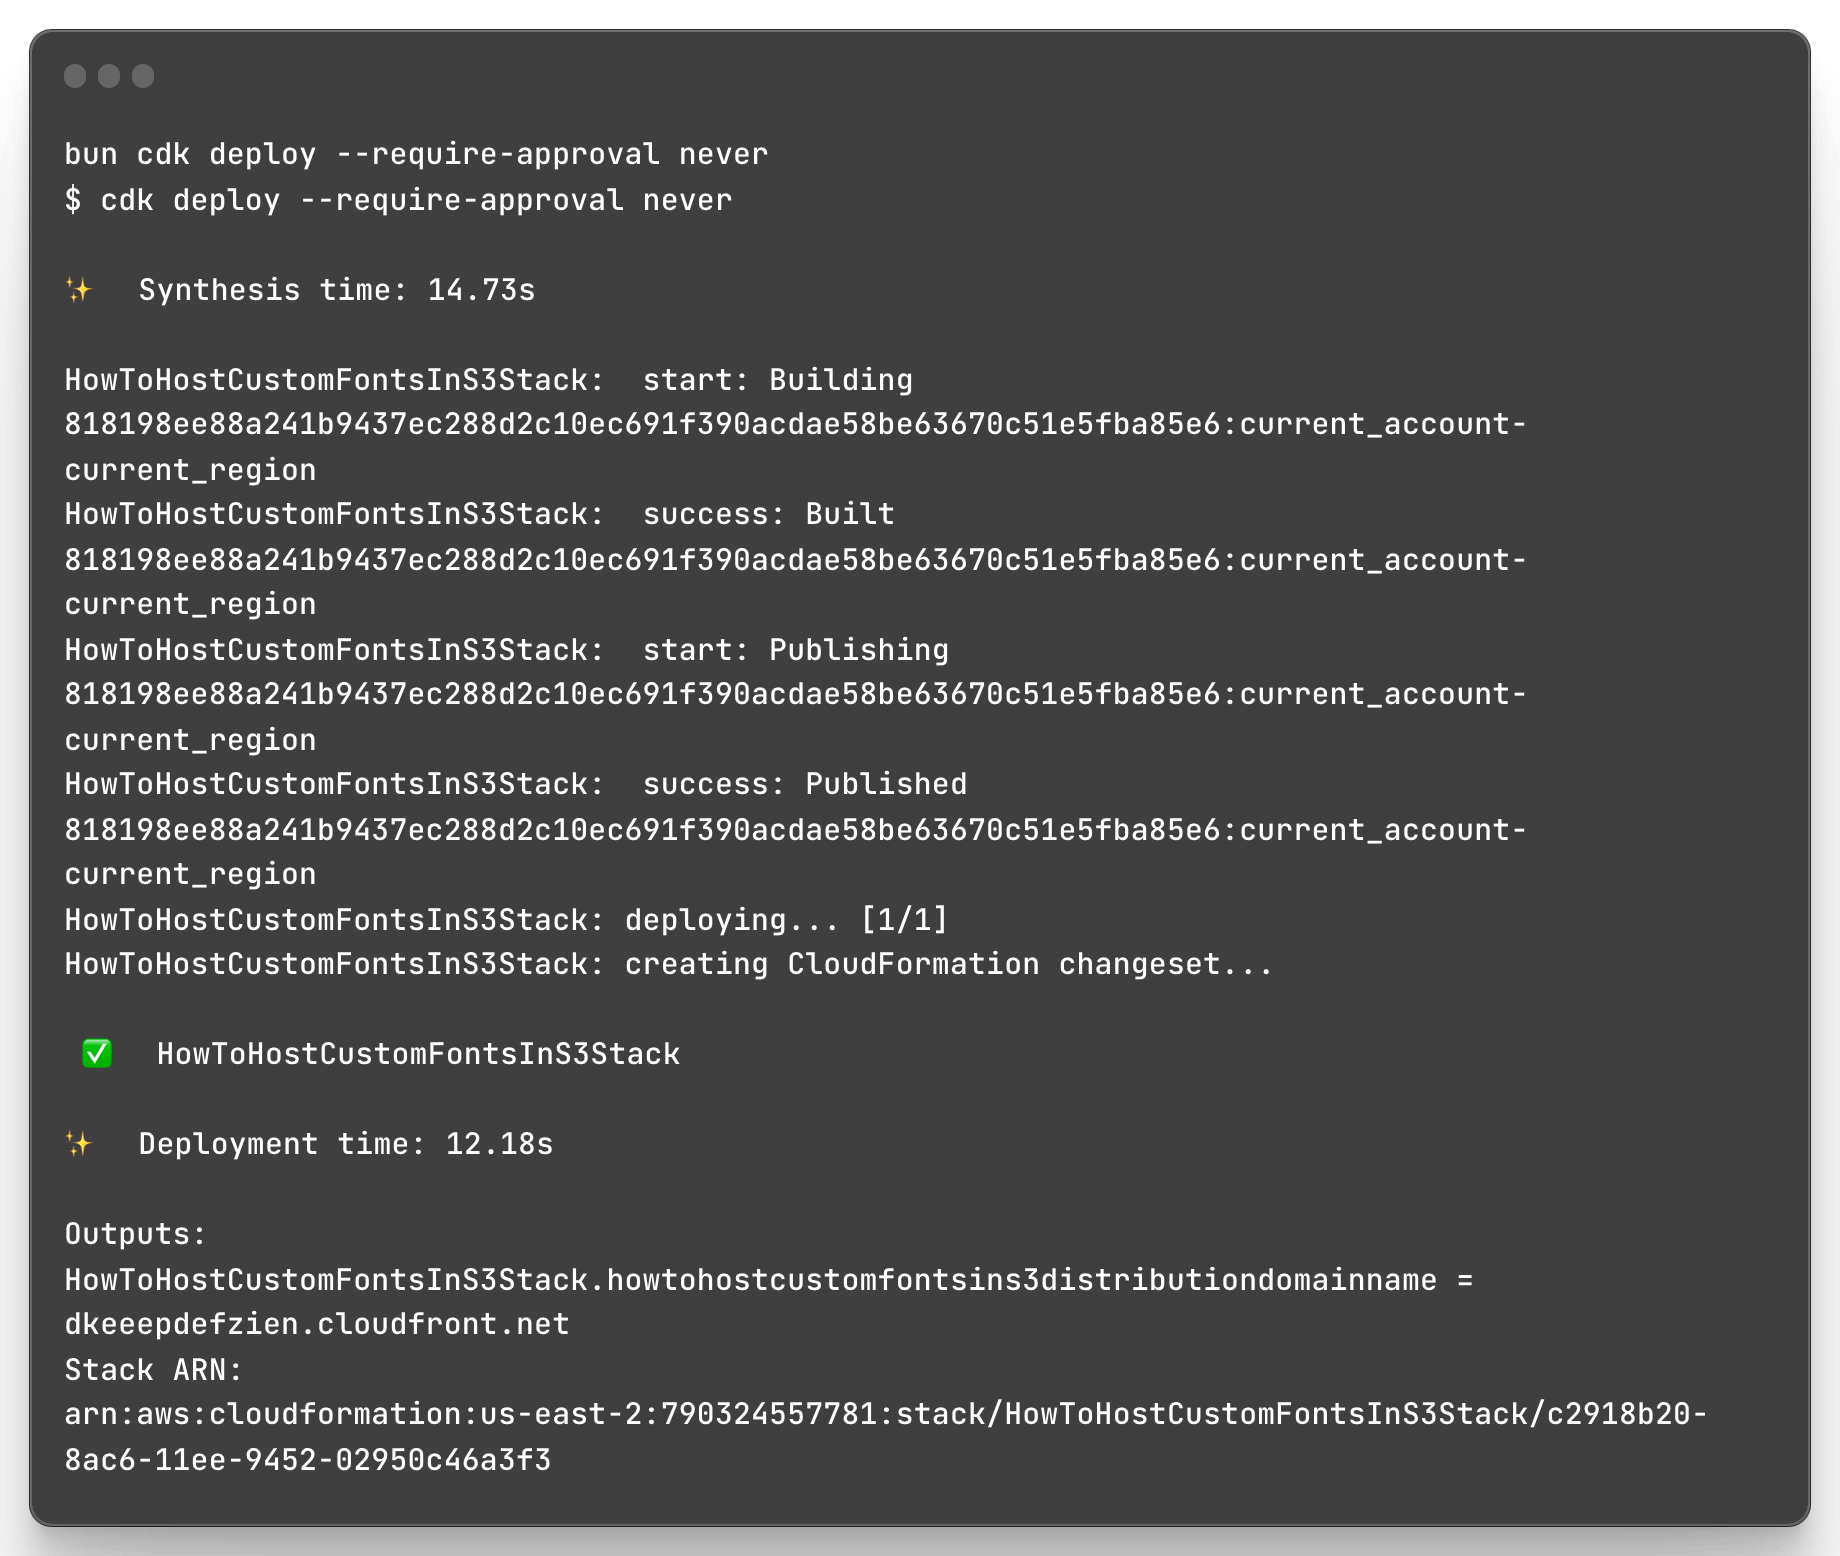 Image of terminal output after running bun cdk deploy